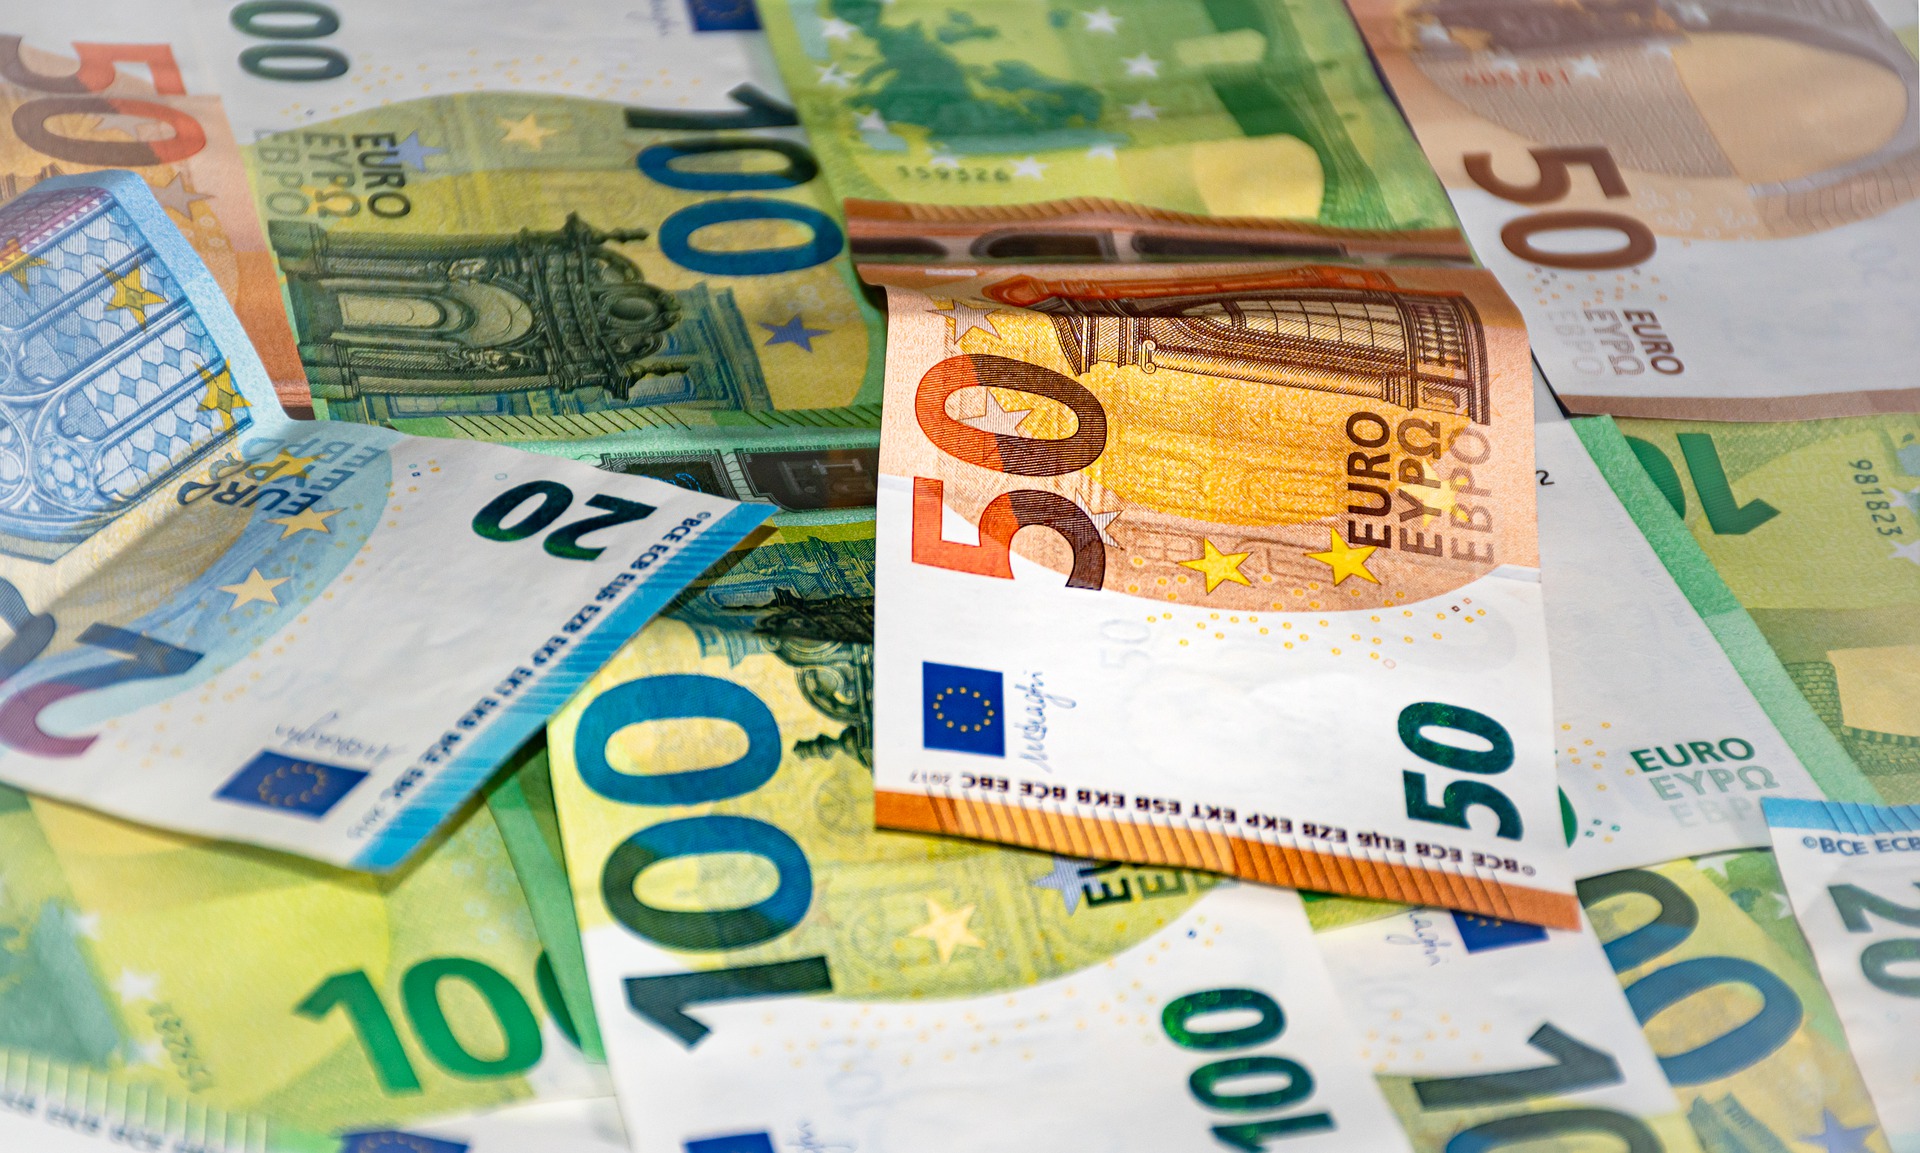 Φοιτητικό στεγαστικό επίδομα 1.000 ευρώ: Μέχρι πότε μπορείτε να υποβάλλετε αίτηση – Οι δικαιούχοι